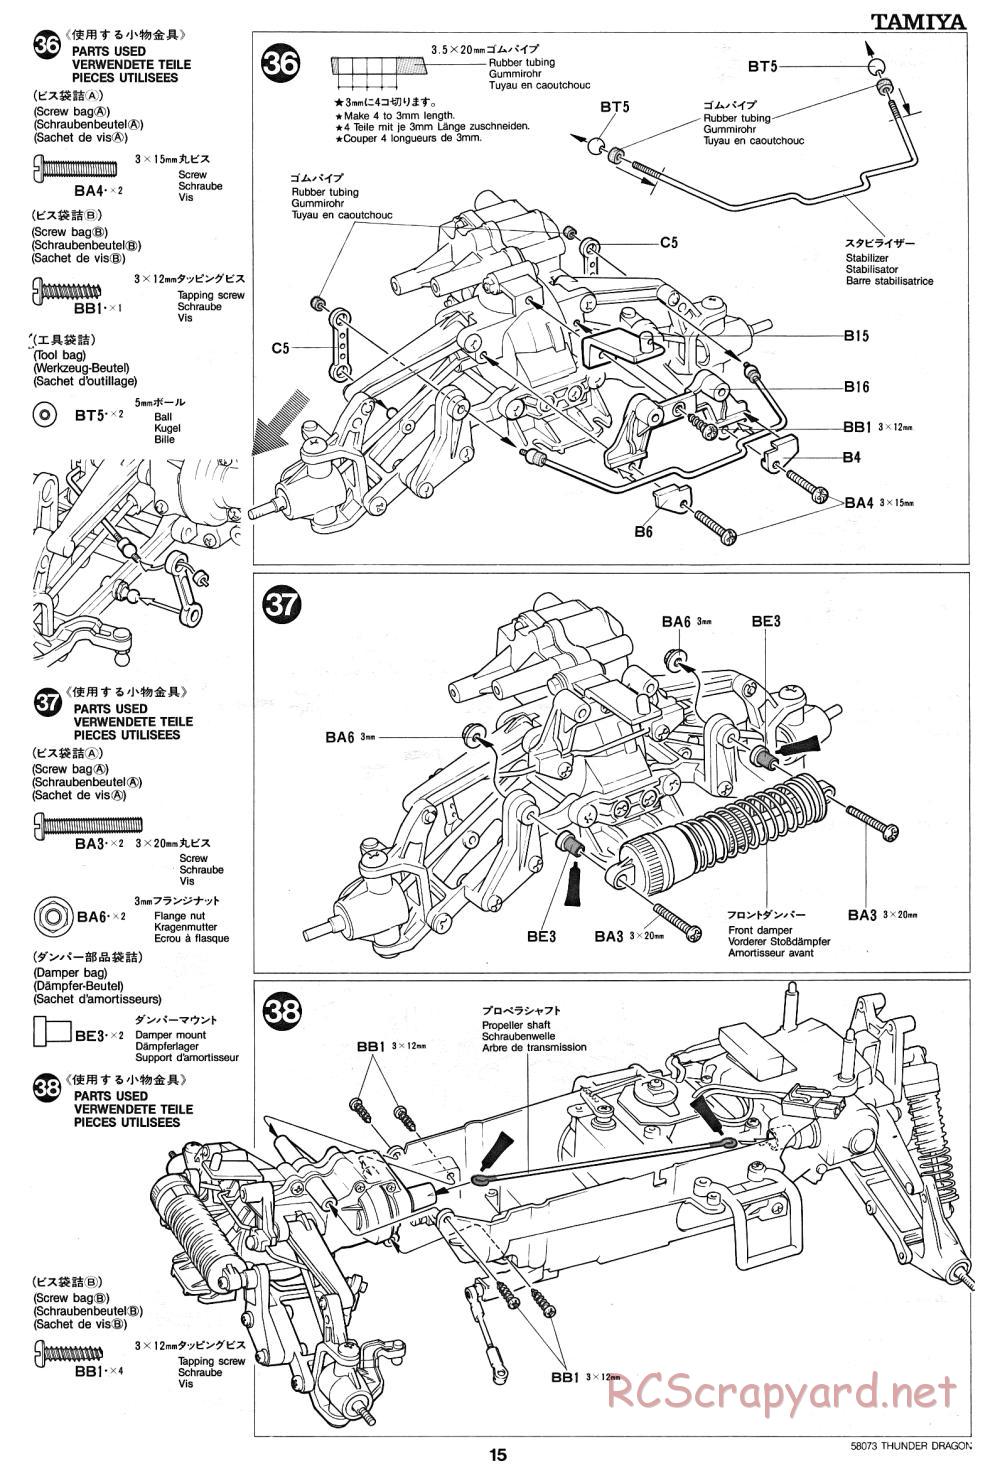 Tamiya - Thunder Dragon - 58073 - Manual - Page 15